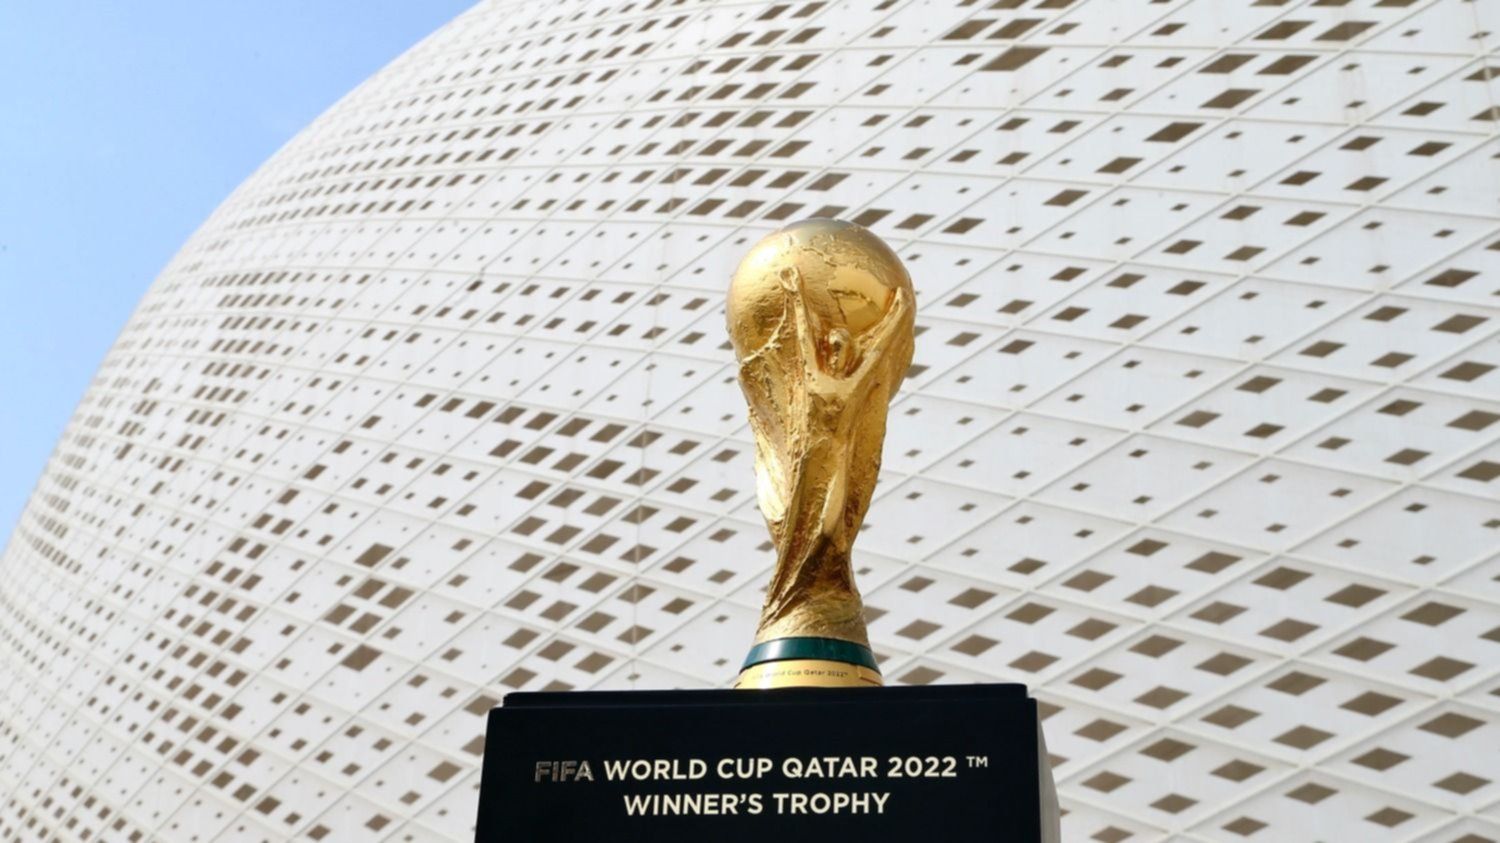 La más deseada: de qué está hecha, cuánto pesa, quién la diseñó y otras  curiosidades históricas de la Copa del Mundo - Infobae